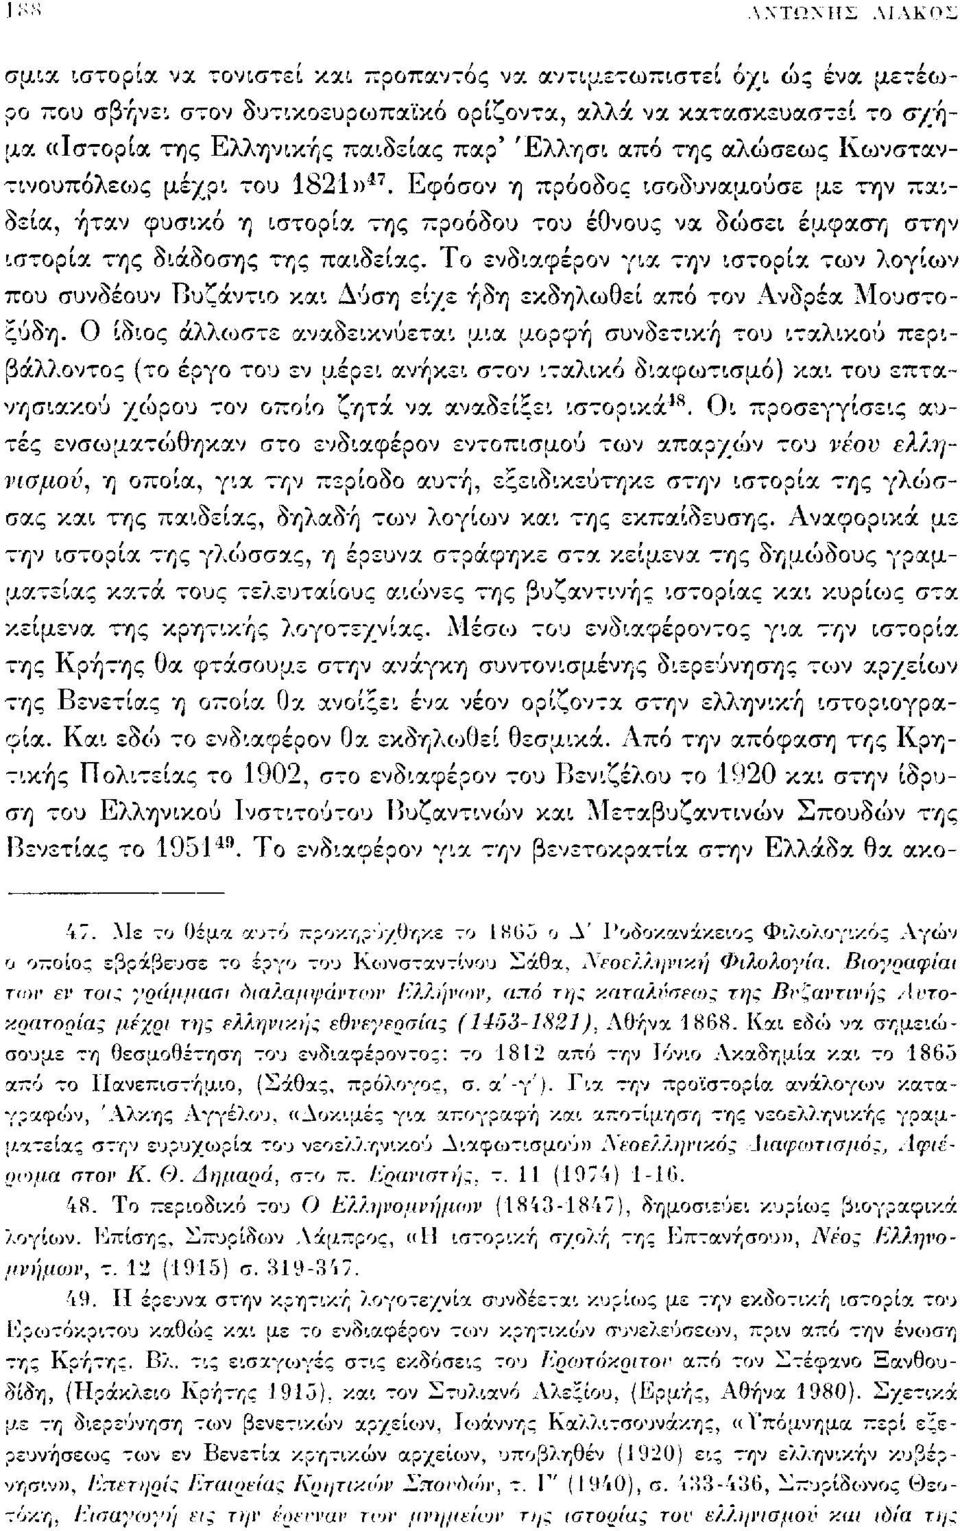 παρ' Έλλησι από της αλώσεως Κωνσταντινουπόλεως μέχρι του 1821» 47.